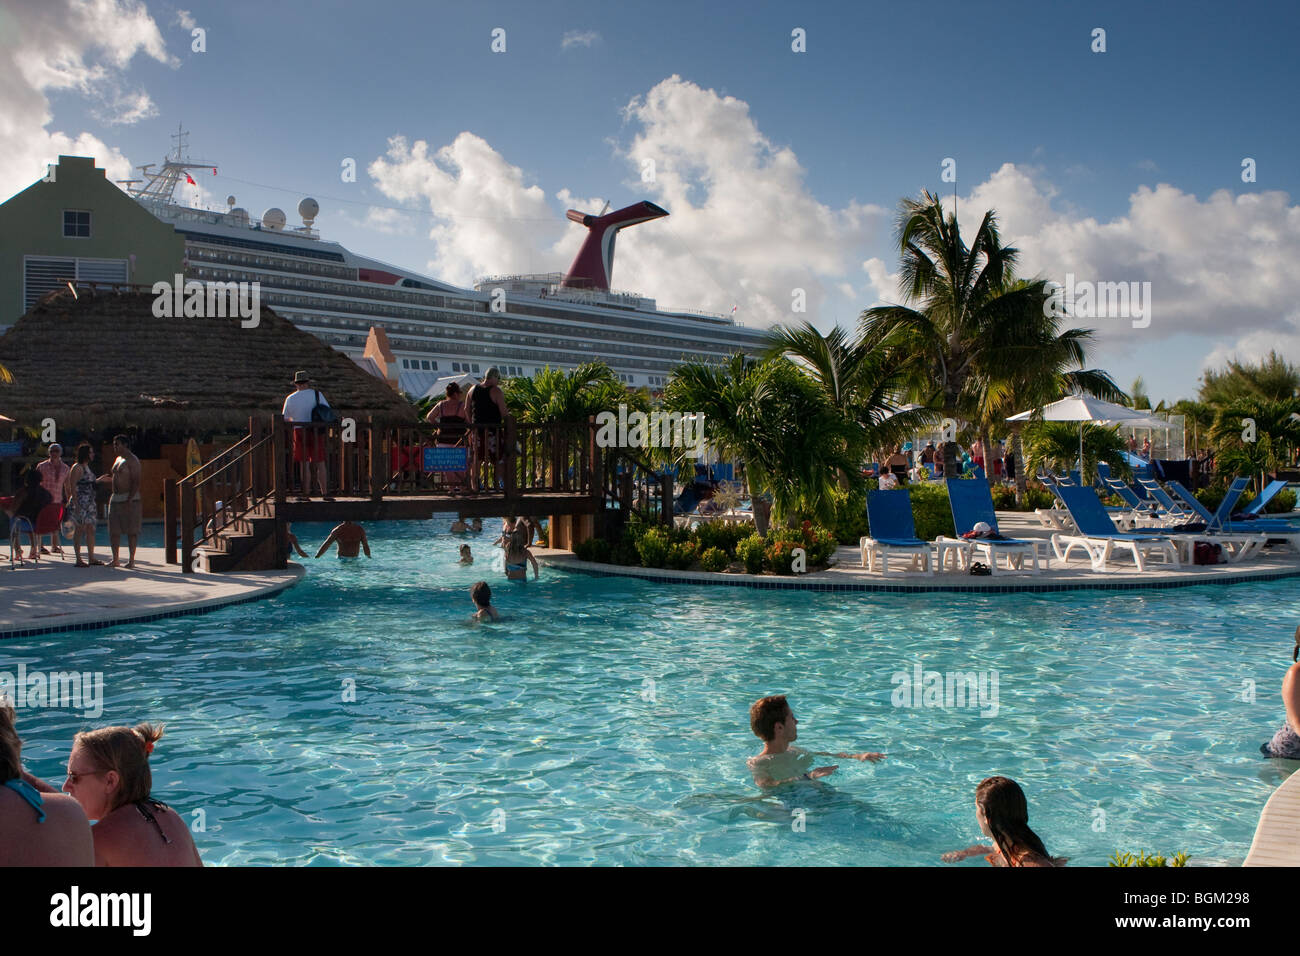 Puerto de cruceros, la Isla Gran Turca, Margaritaville, piscina, con nubes hinchadas, y Carnival Cruise Ship en segundo plano. BWI Foto de stock